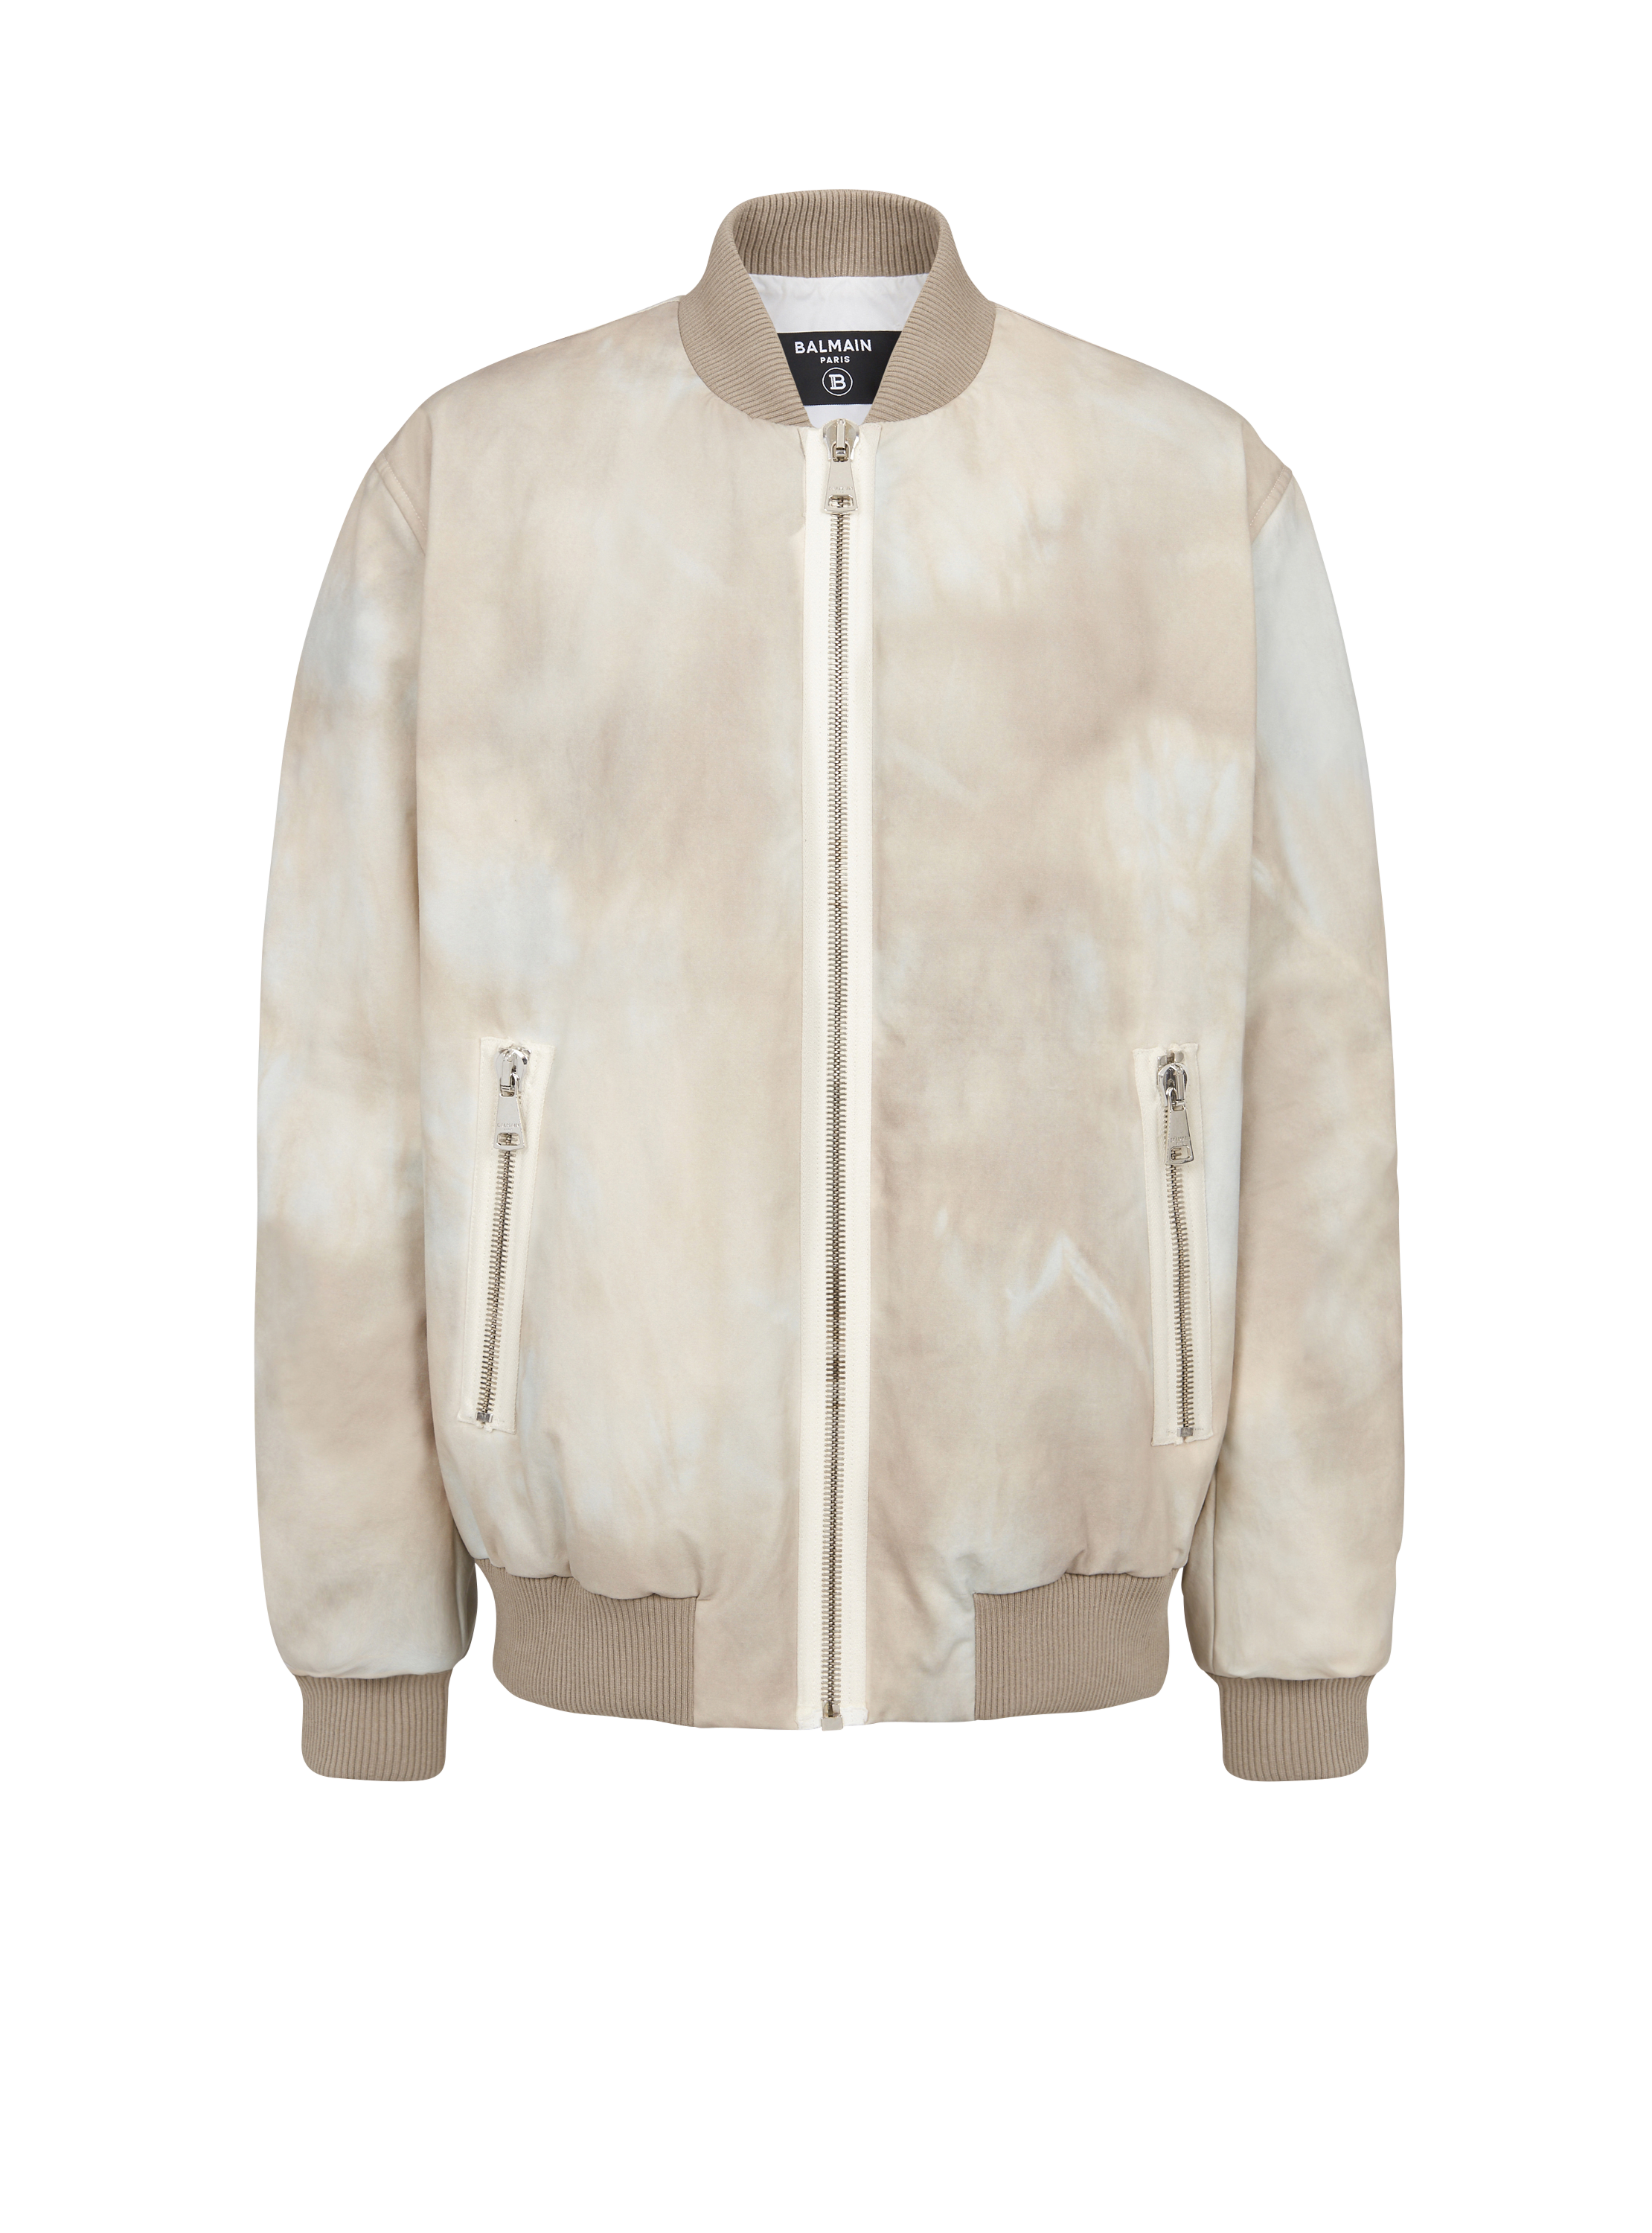 Desert print cotton bomber jacket